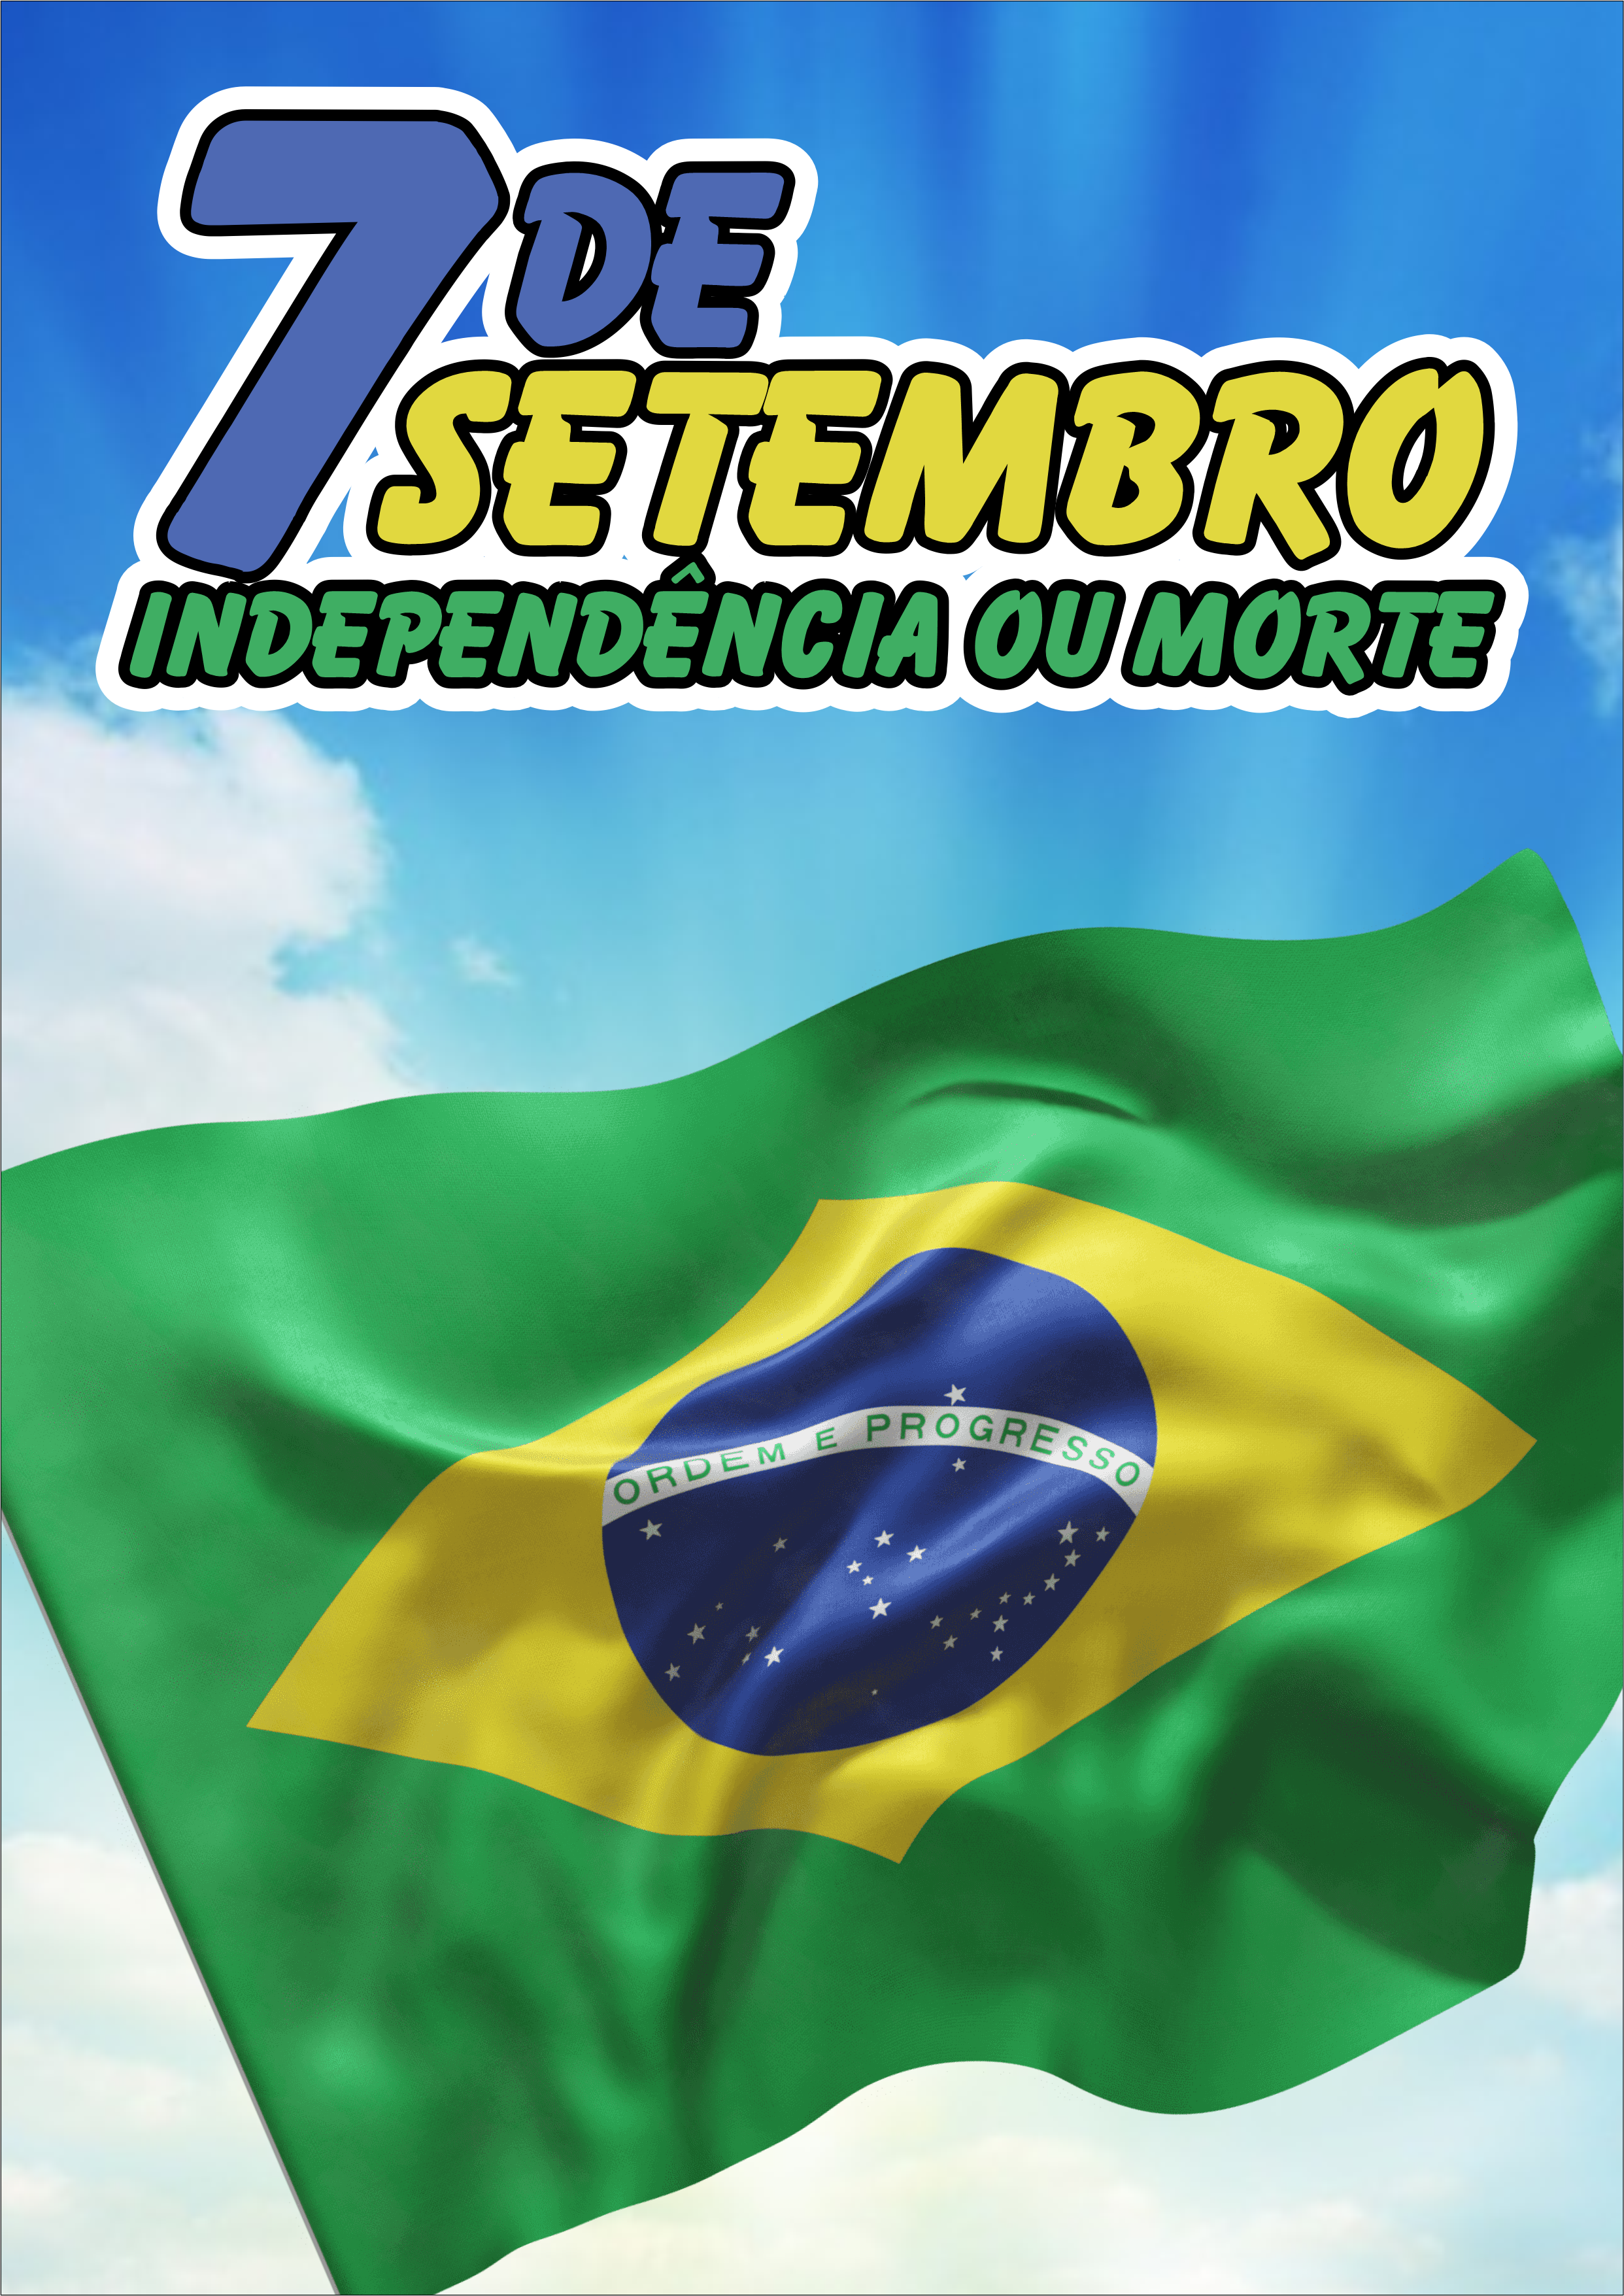 7 de setembro dia da independência do Brasil independência ou morte png